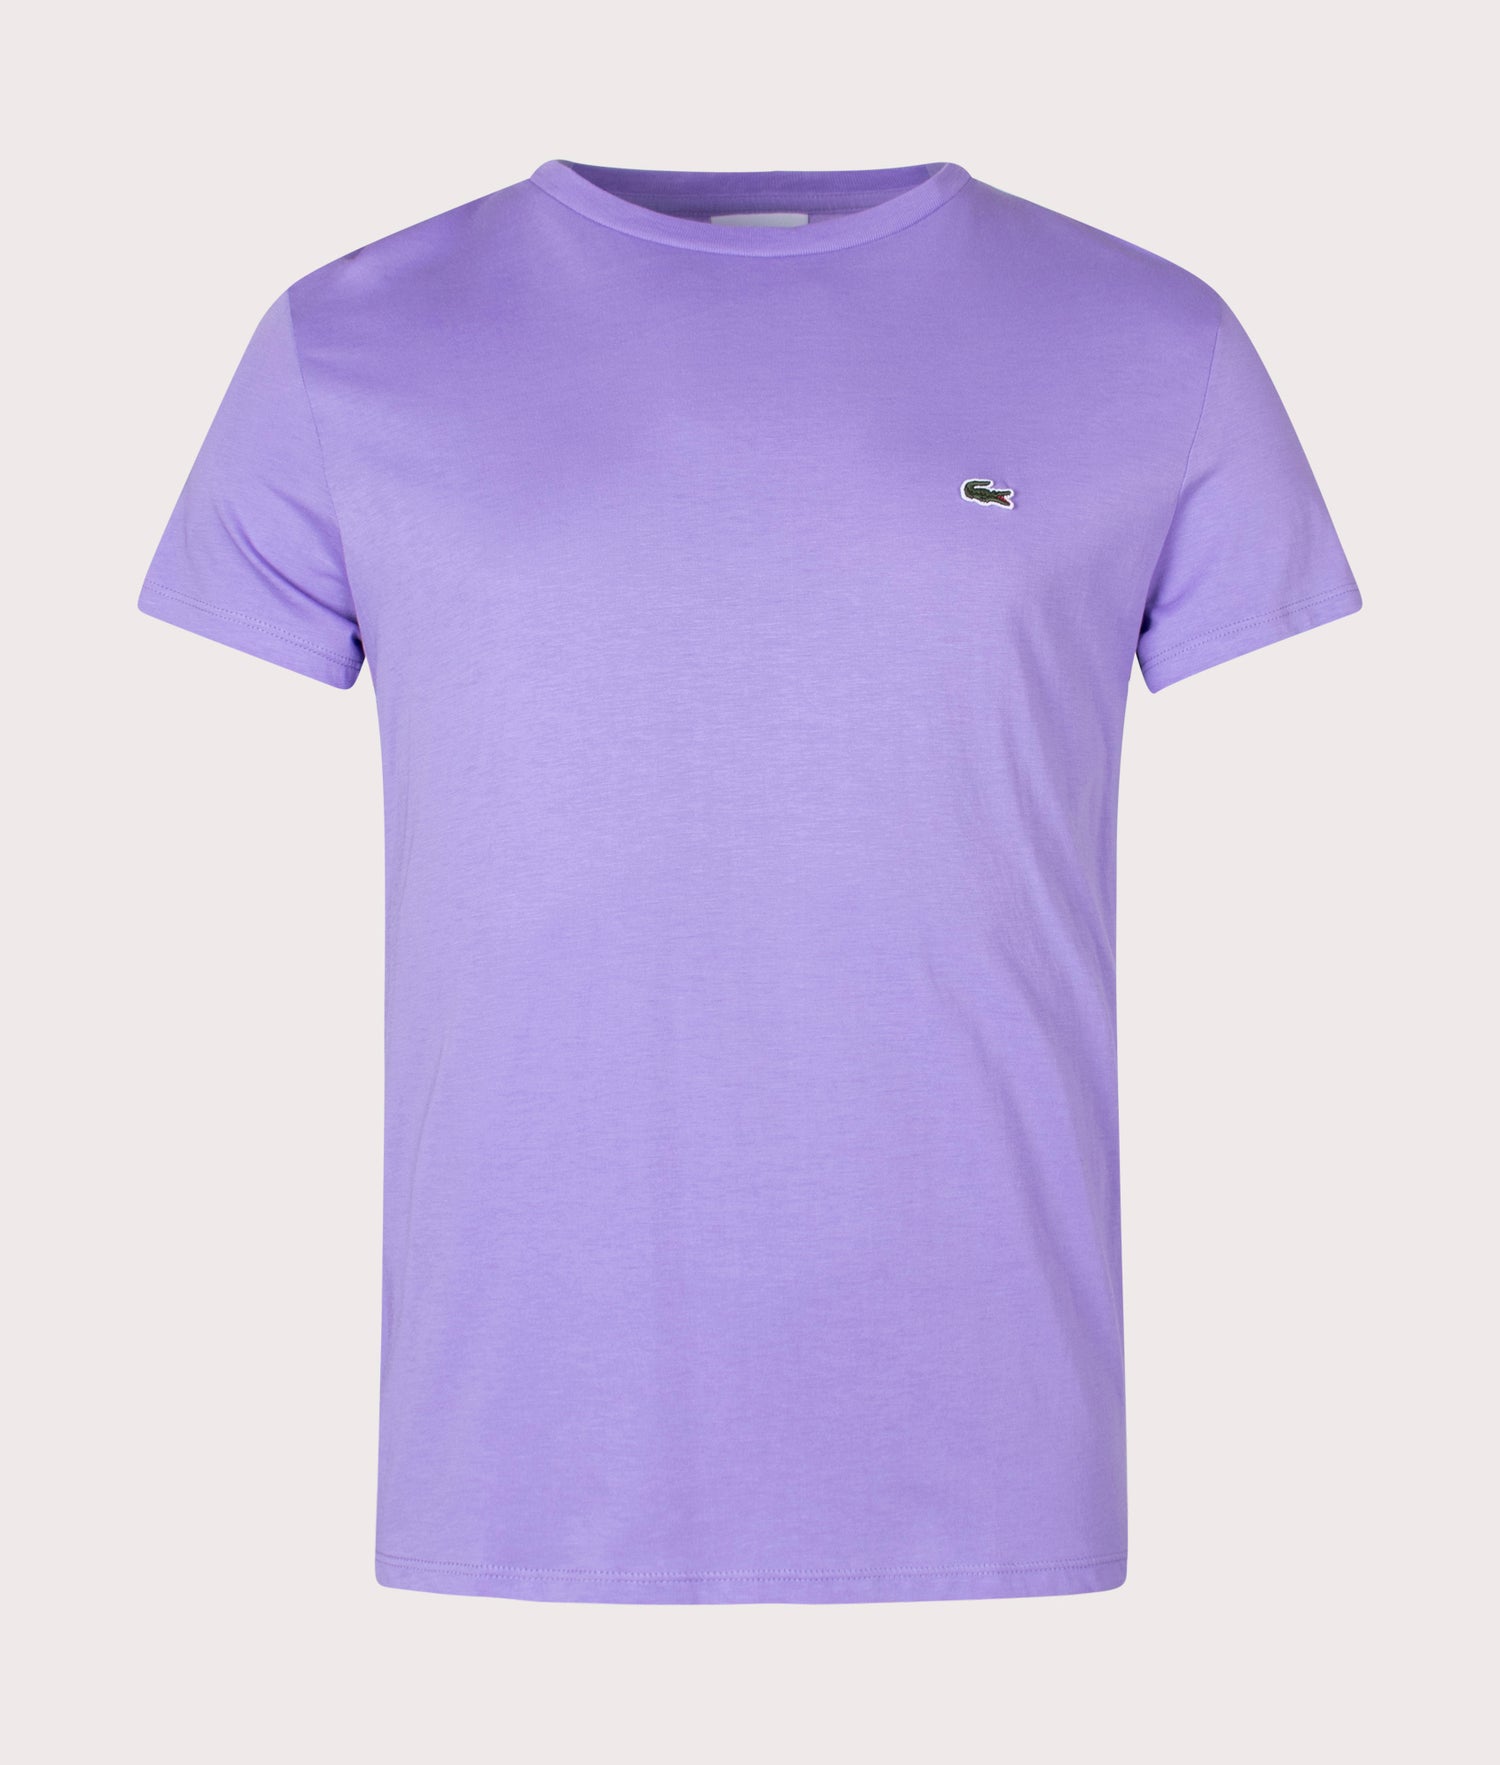 Cotton Purple Logo Croc | T-shirt EQVVS Pima | Lacoste